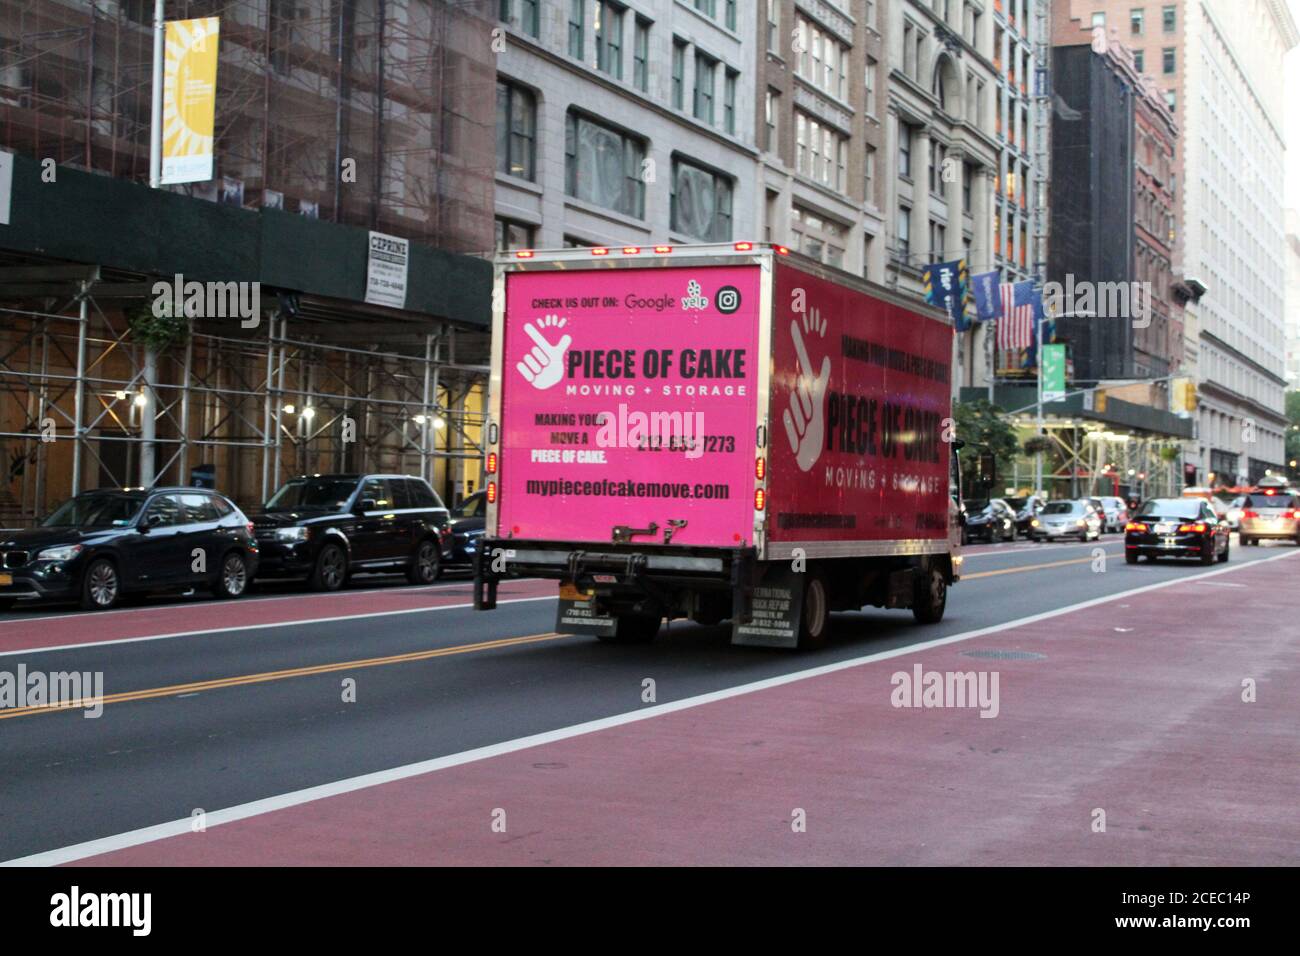 Nueva York, Nueva York, Estados Unidos. 30 de agosto de 2020. A medida que la violencia continúa inflamando Nueva York y los negocios todavía están en un nivel bajo de todos los tiempos, los residentes huyen masivamente de la ciudad y permanentemente. El siniestro vals de ambulancias y vehículos funerarios ha dado paso a innumerables camiones móviles como este vehículo de Marca rosa que se acelera a través de Manhattan. Este exocus que comenzó en mayo ha crecido a proporciones asombrosas durante el verano. Los movers están abrumados, algunos ya no pueden responder a las solicitudes que han aumentado hasta un 70%, especialmente cuando se trata de viajes fuera del estado, como Florida. (Imagen de crédito: © Foto de stock